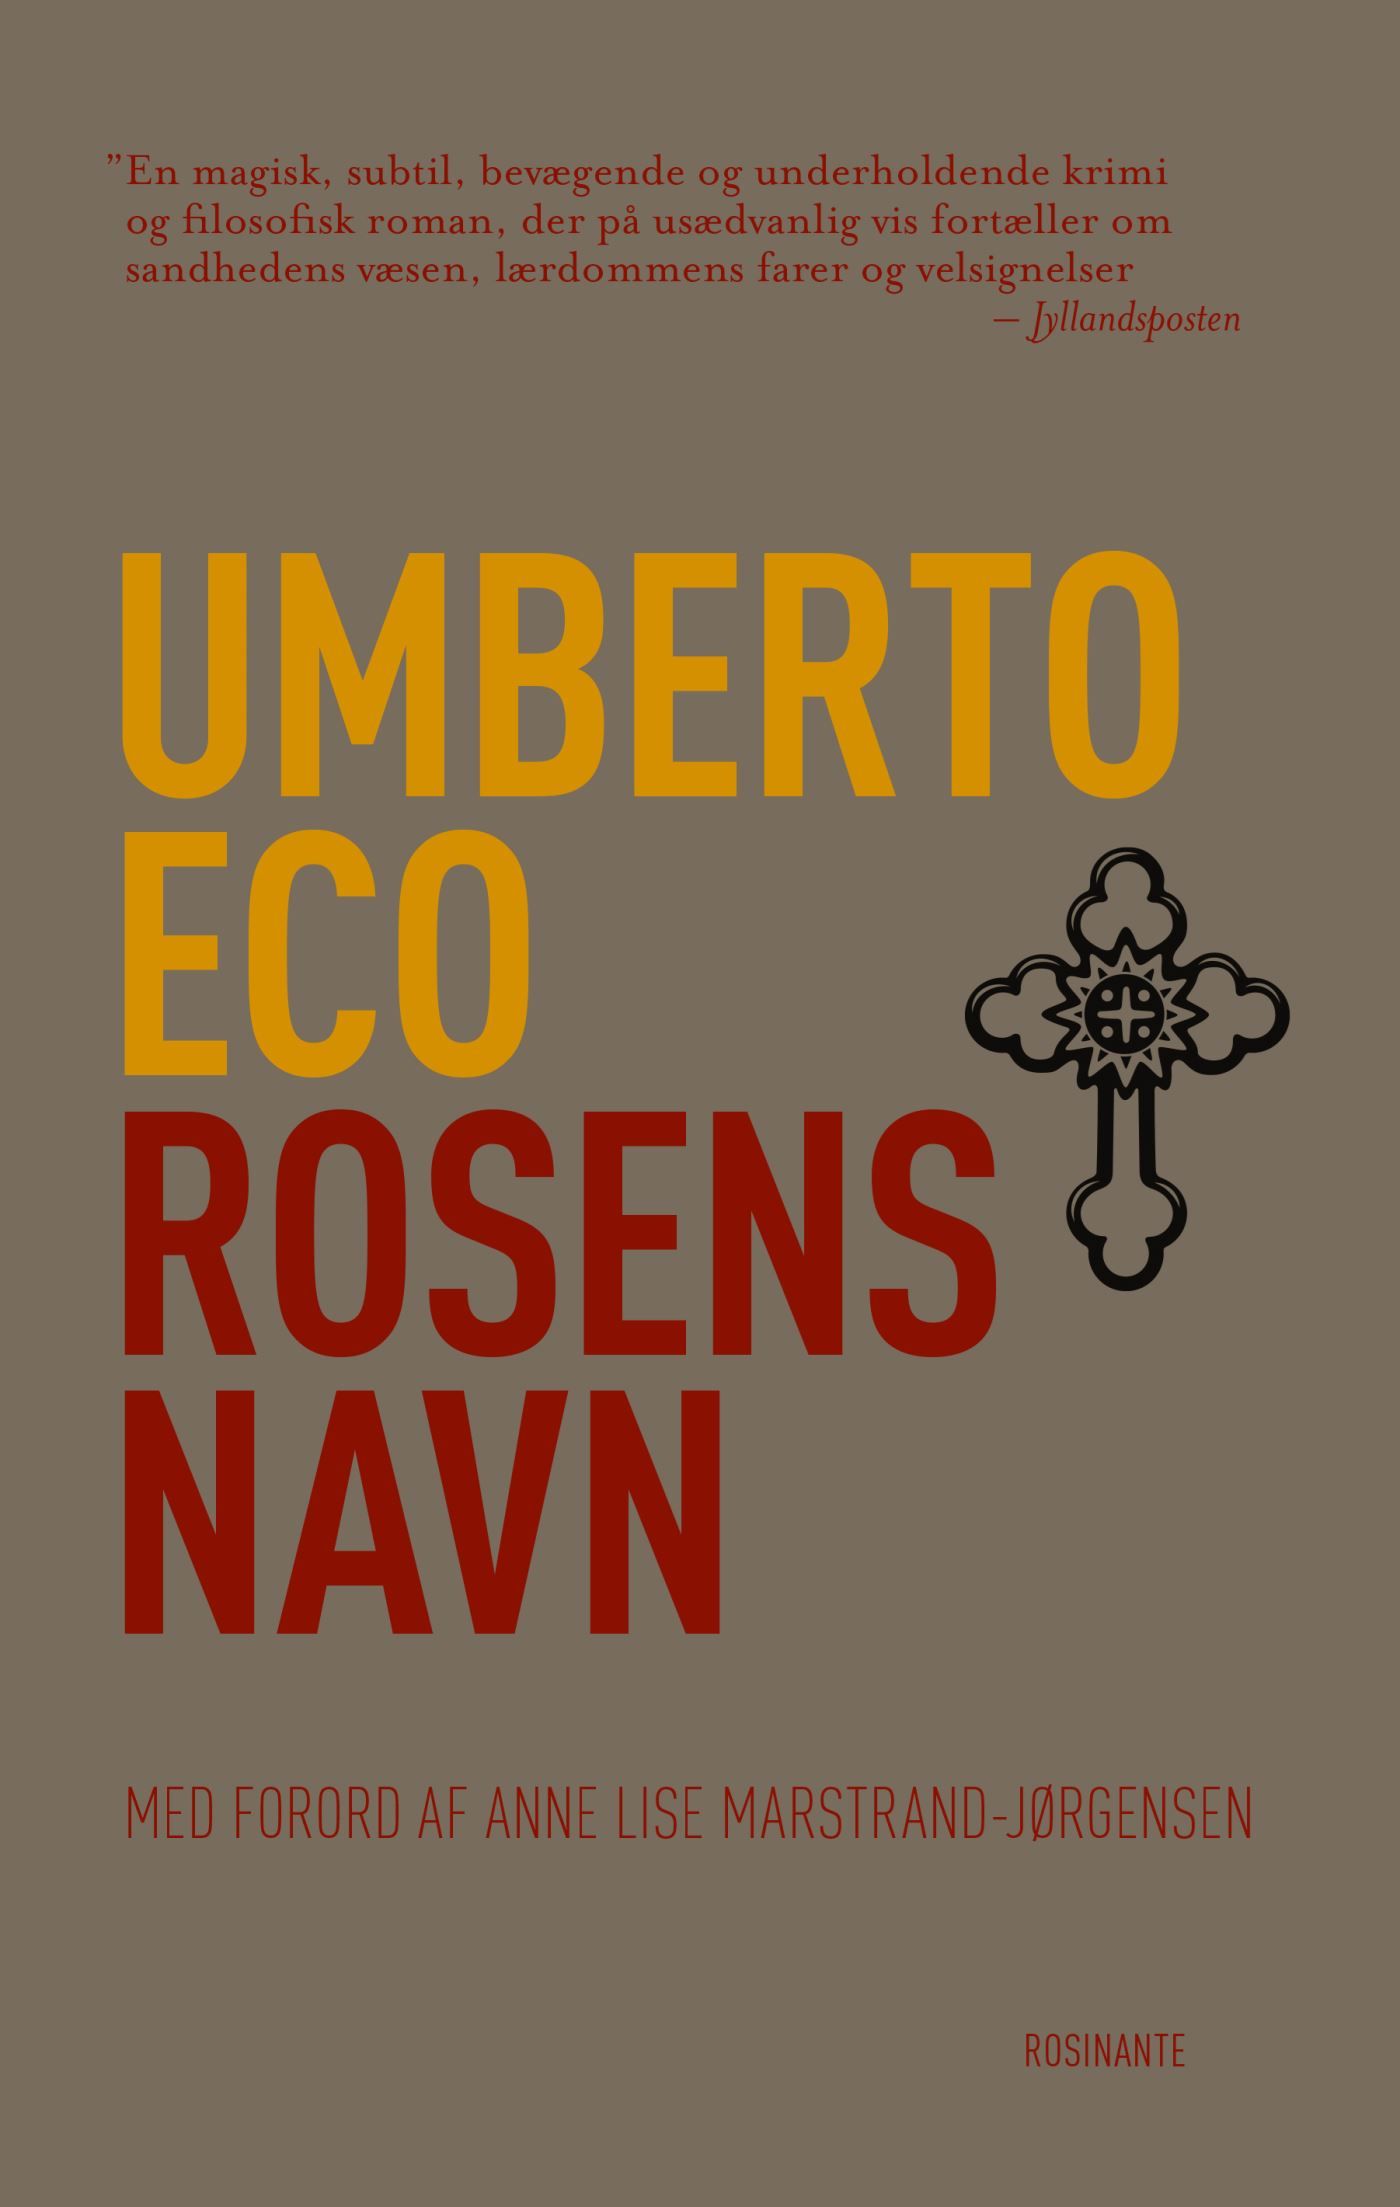 Rosens navn, lydbog af Umberto Eco